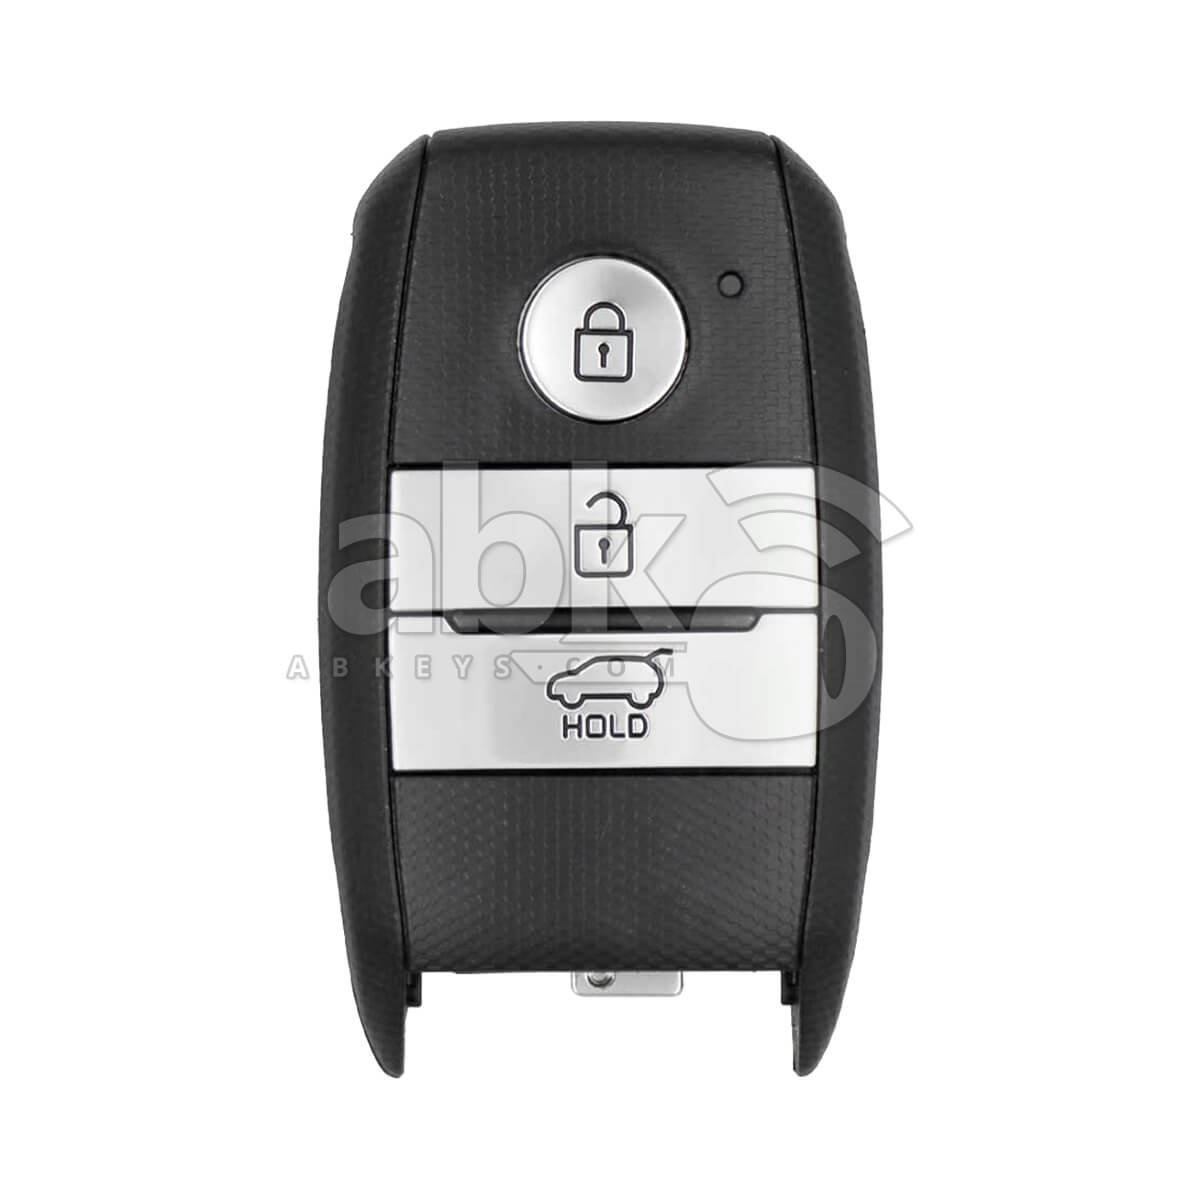 Genuine Kia Picanto 2014+ Smart Key 3Buttons 95440-1Y600 433MHz SWI-XMIFGEO3 - ABK-3746 - ABKEYS.COM